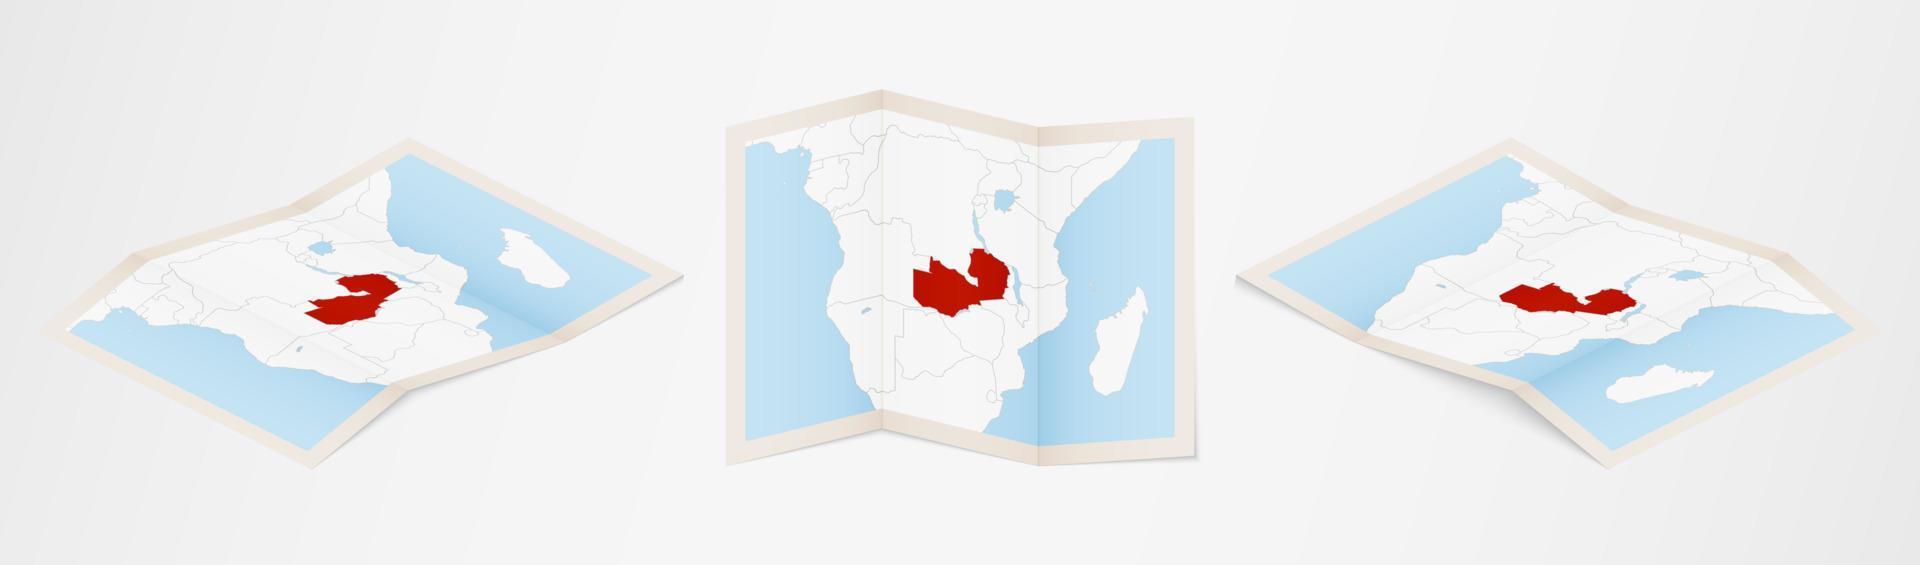 mapa plegado de zambia en tres versiones diferentes. vector